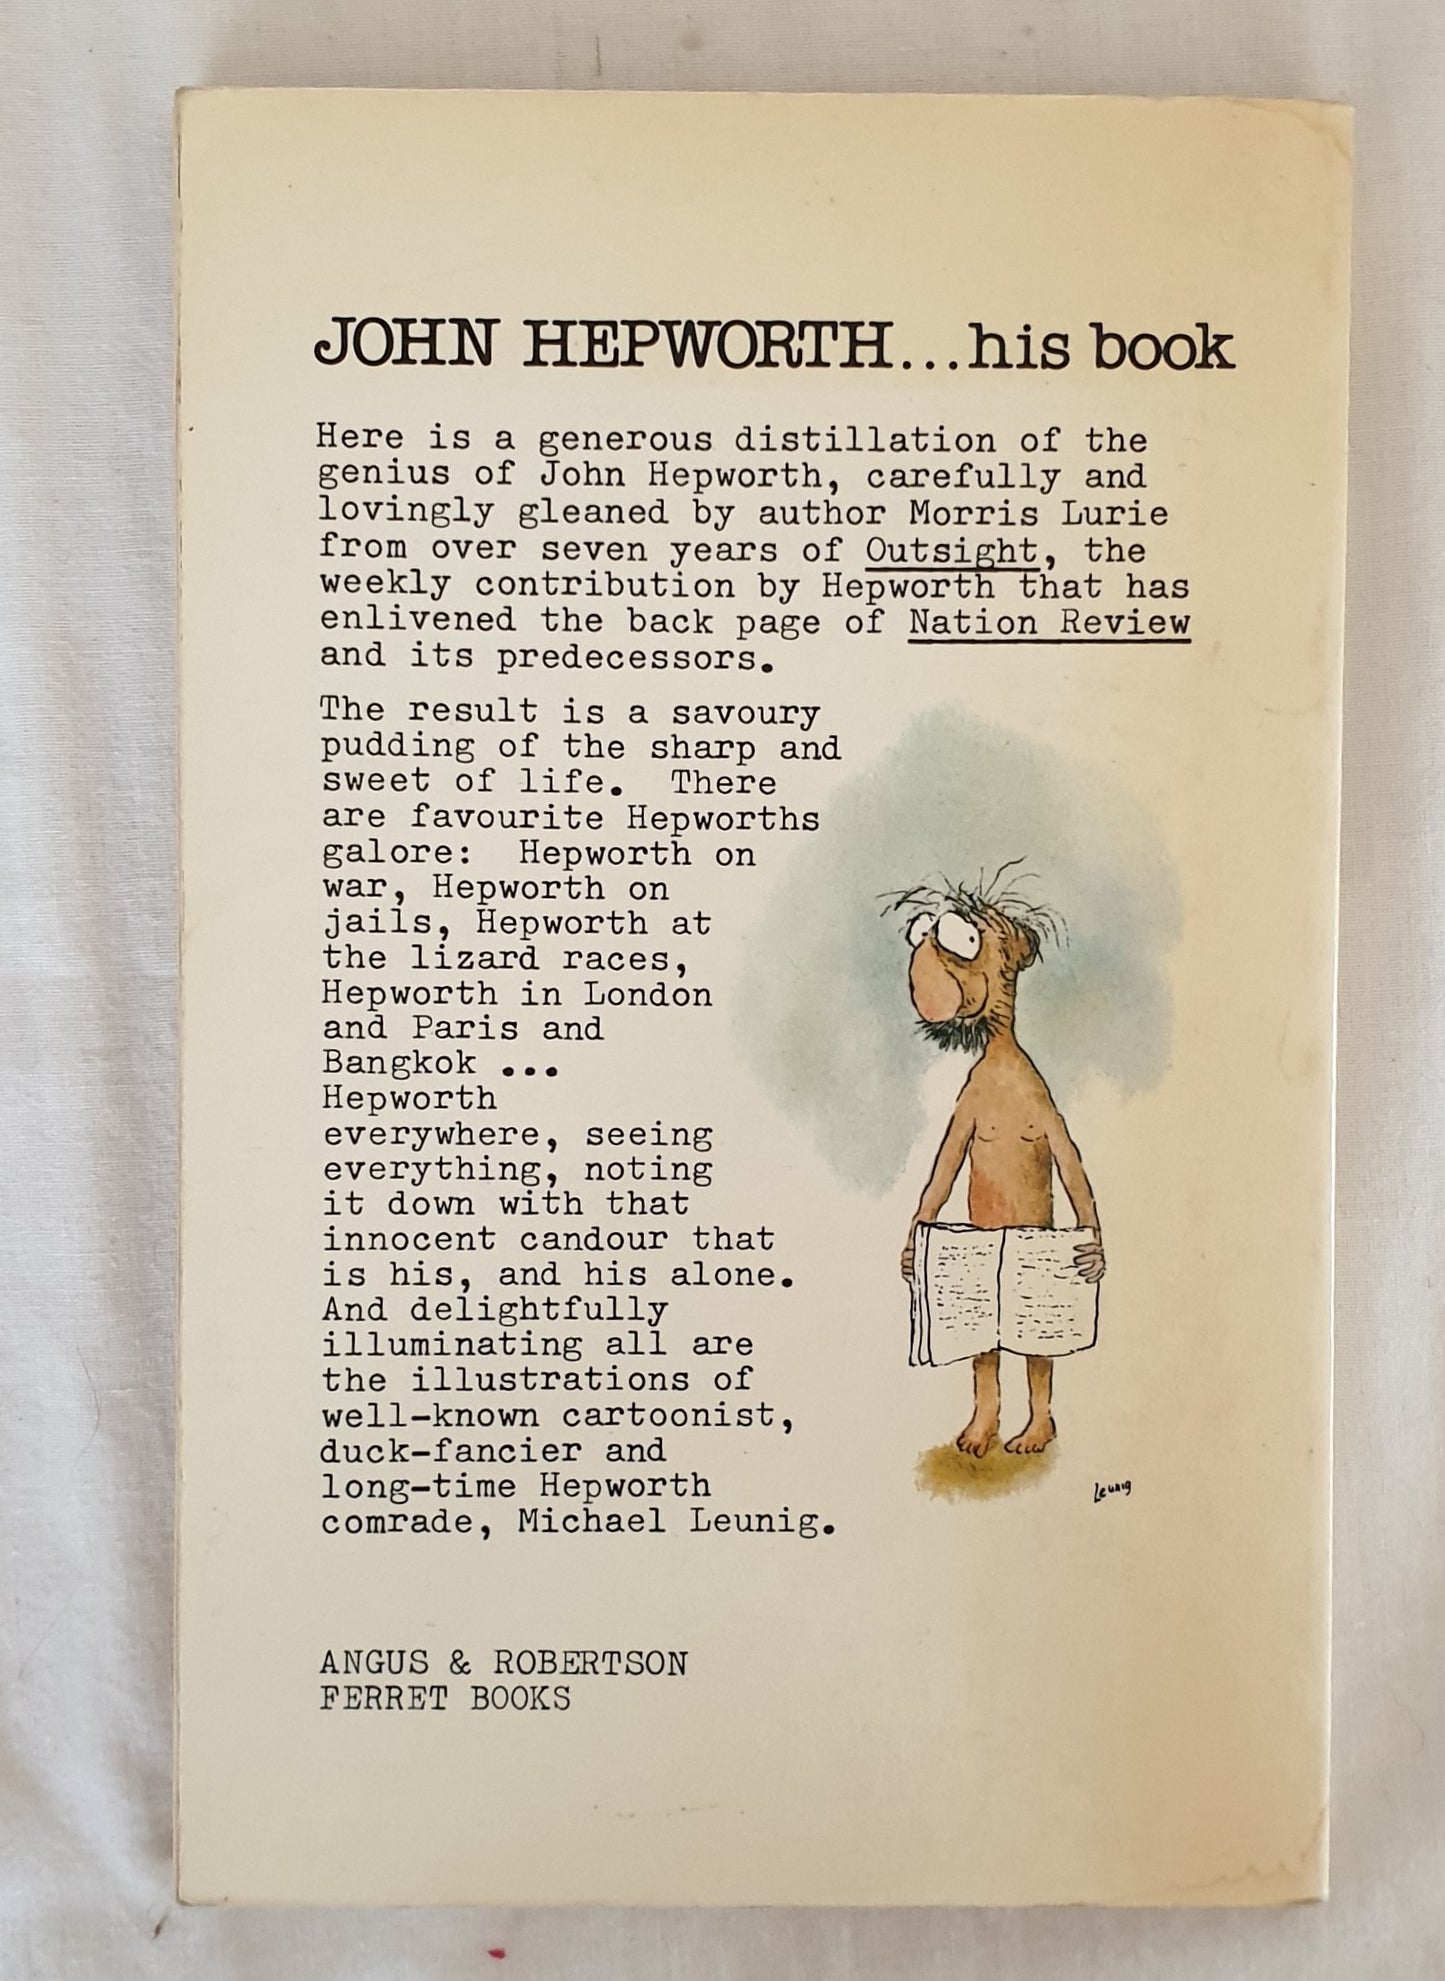 ...his book by John Hepworth